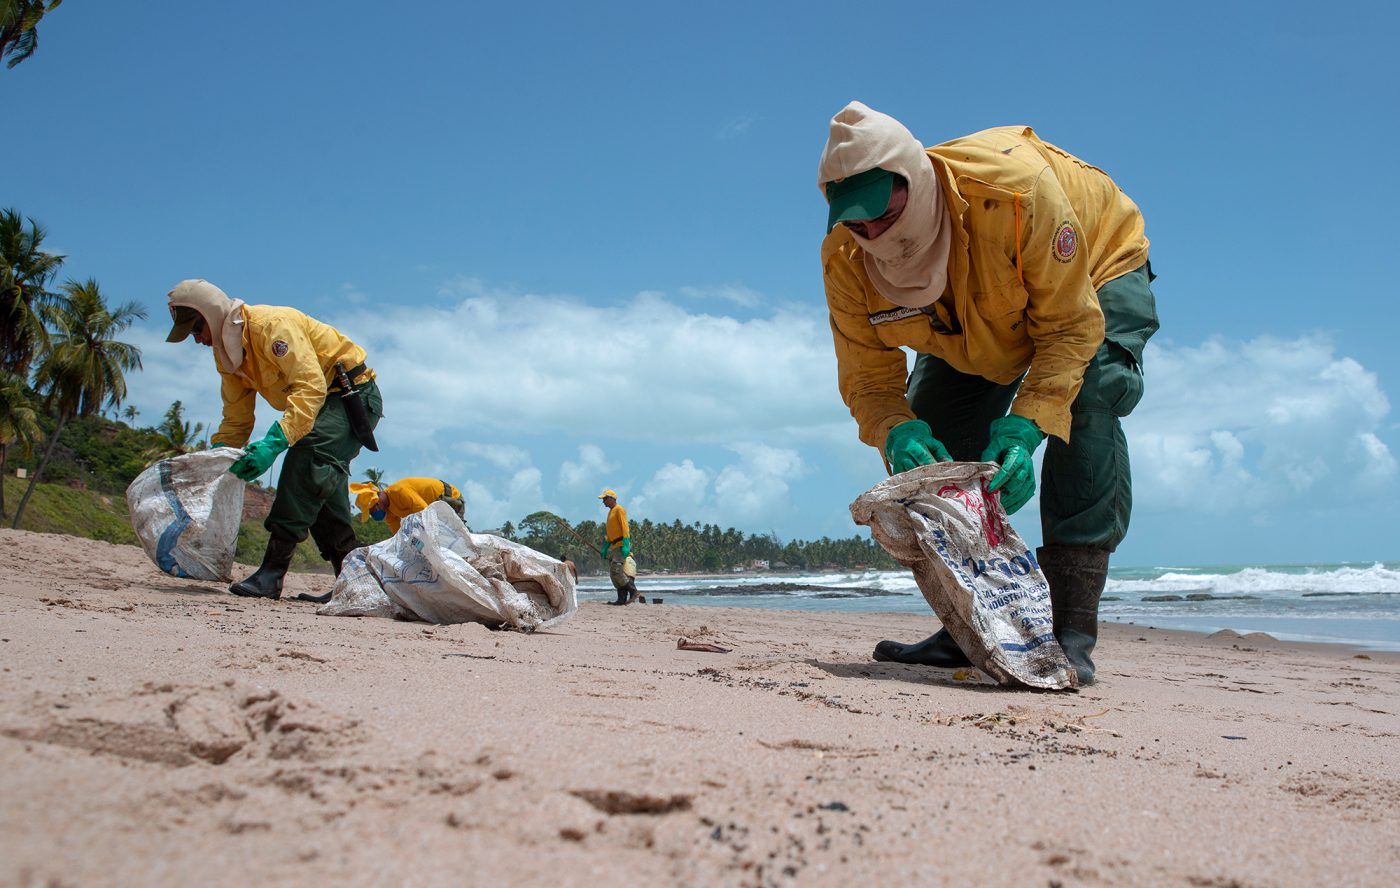 Empleados del gobierno brasileño limpian el petróleo de la playa de Japaratinga, en el estado de Alagoas. Crédito: Léo Malafaia/Diálogo Chino